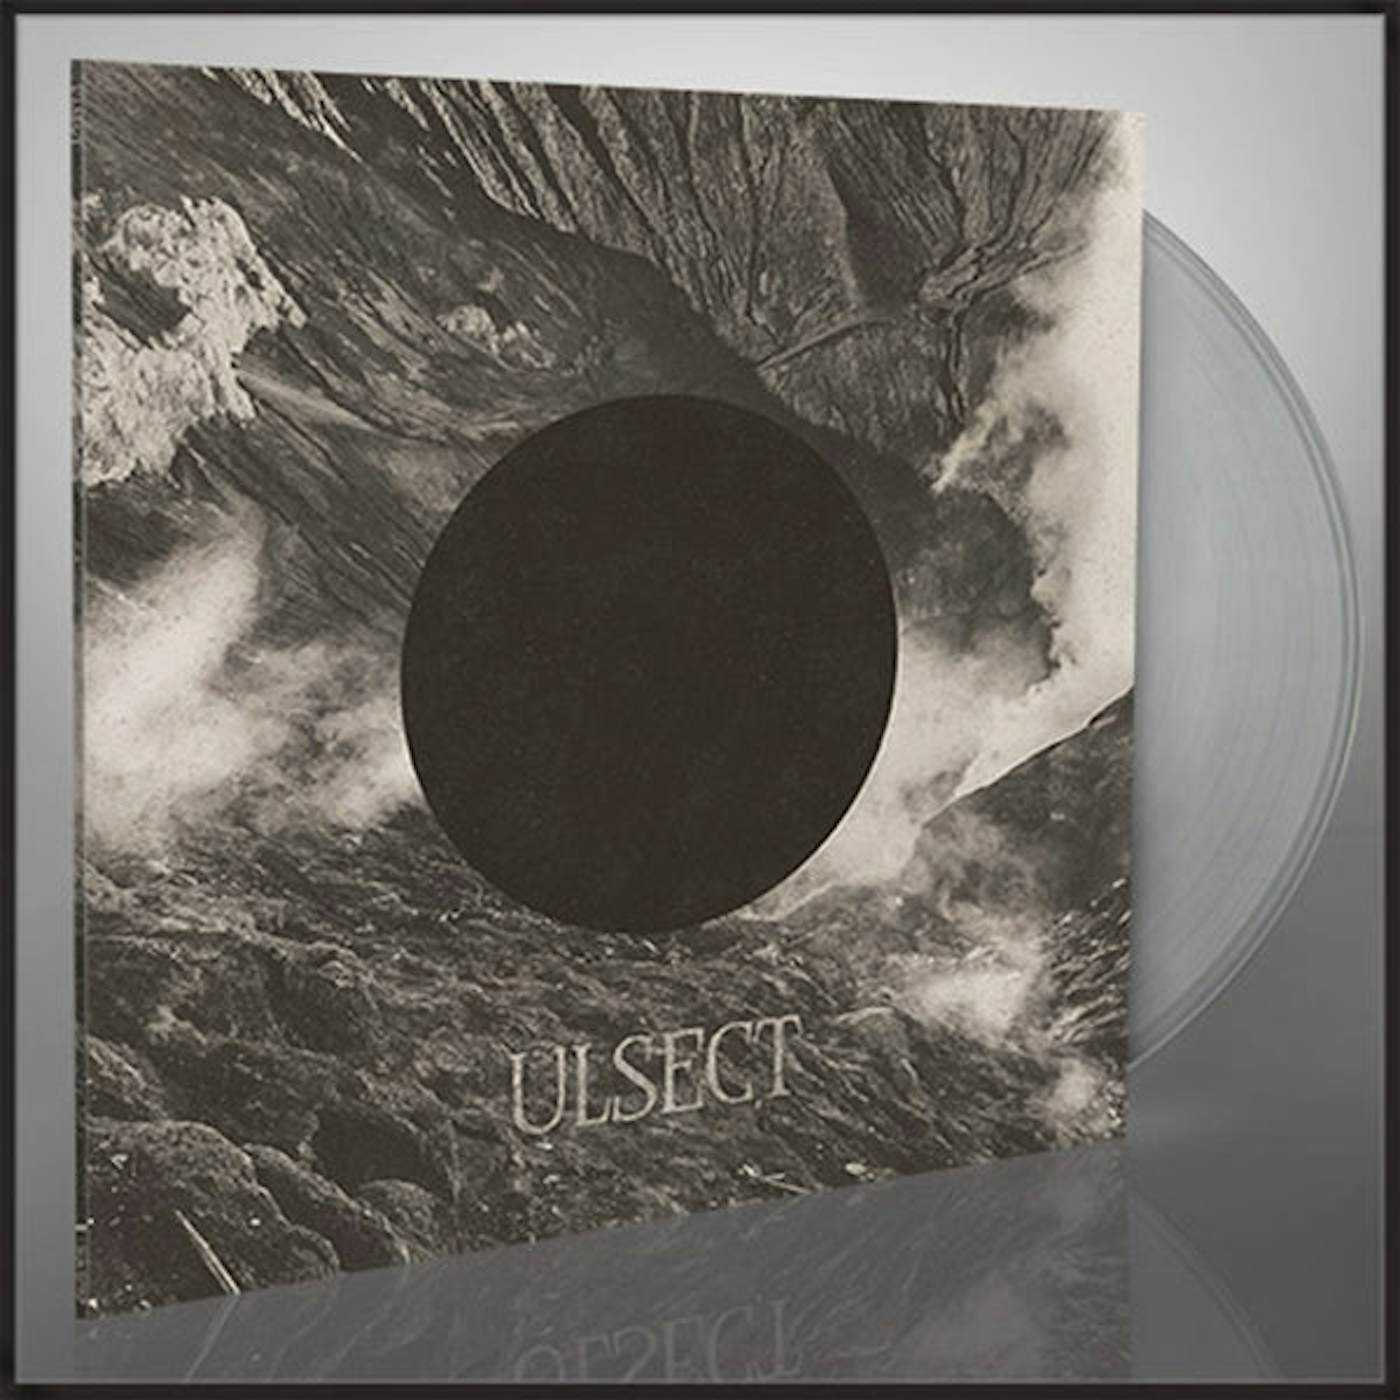 Ulsect LP - Ulsect (Clear Vinyl)